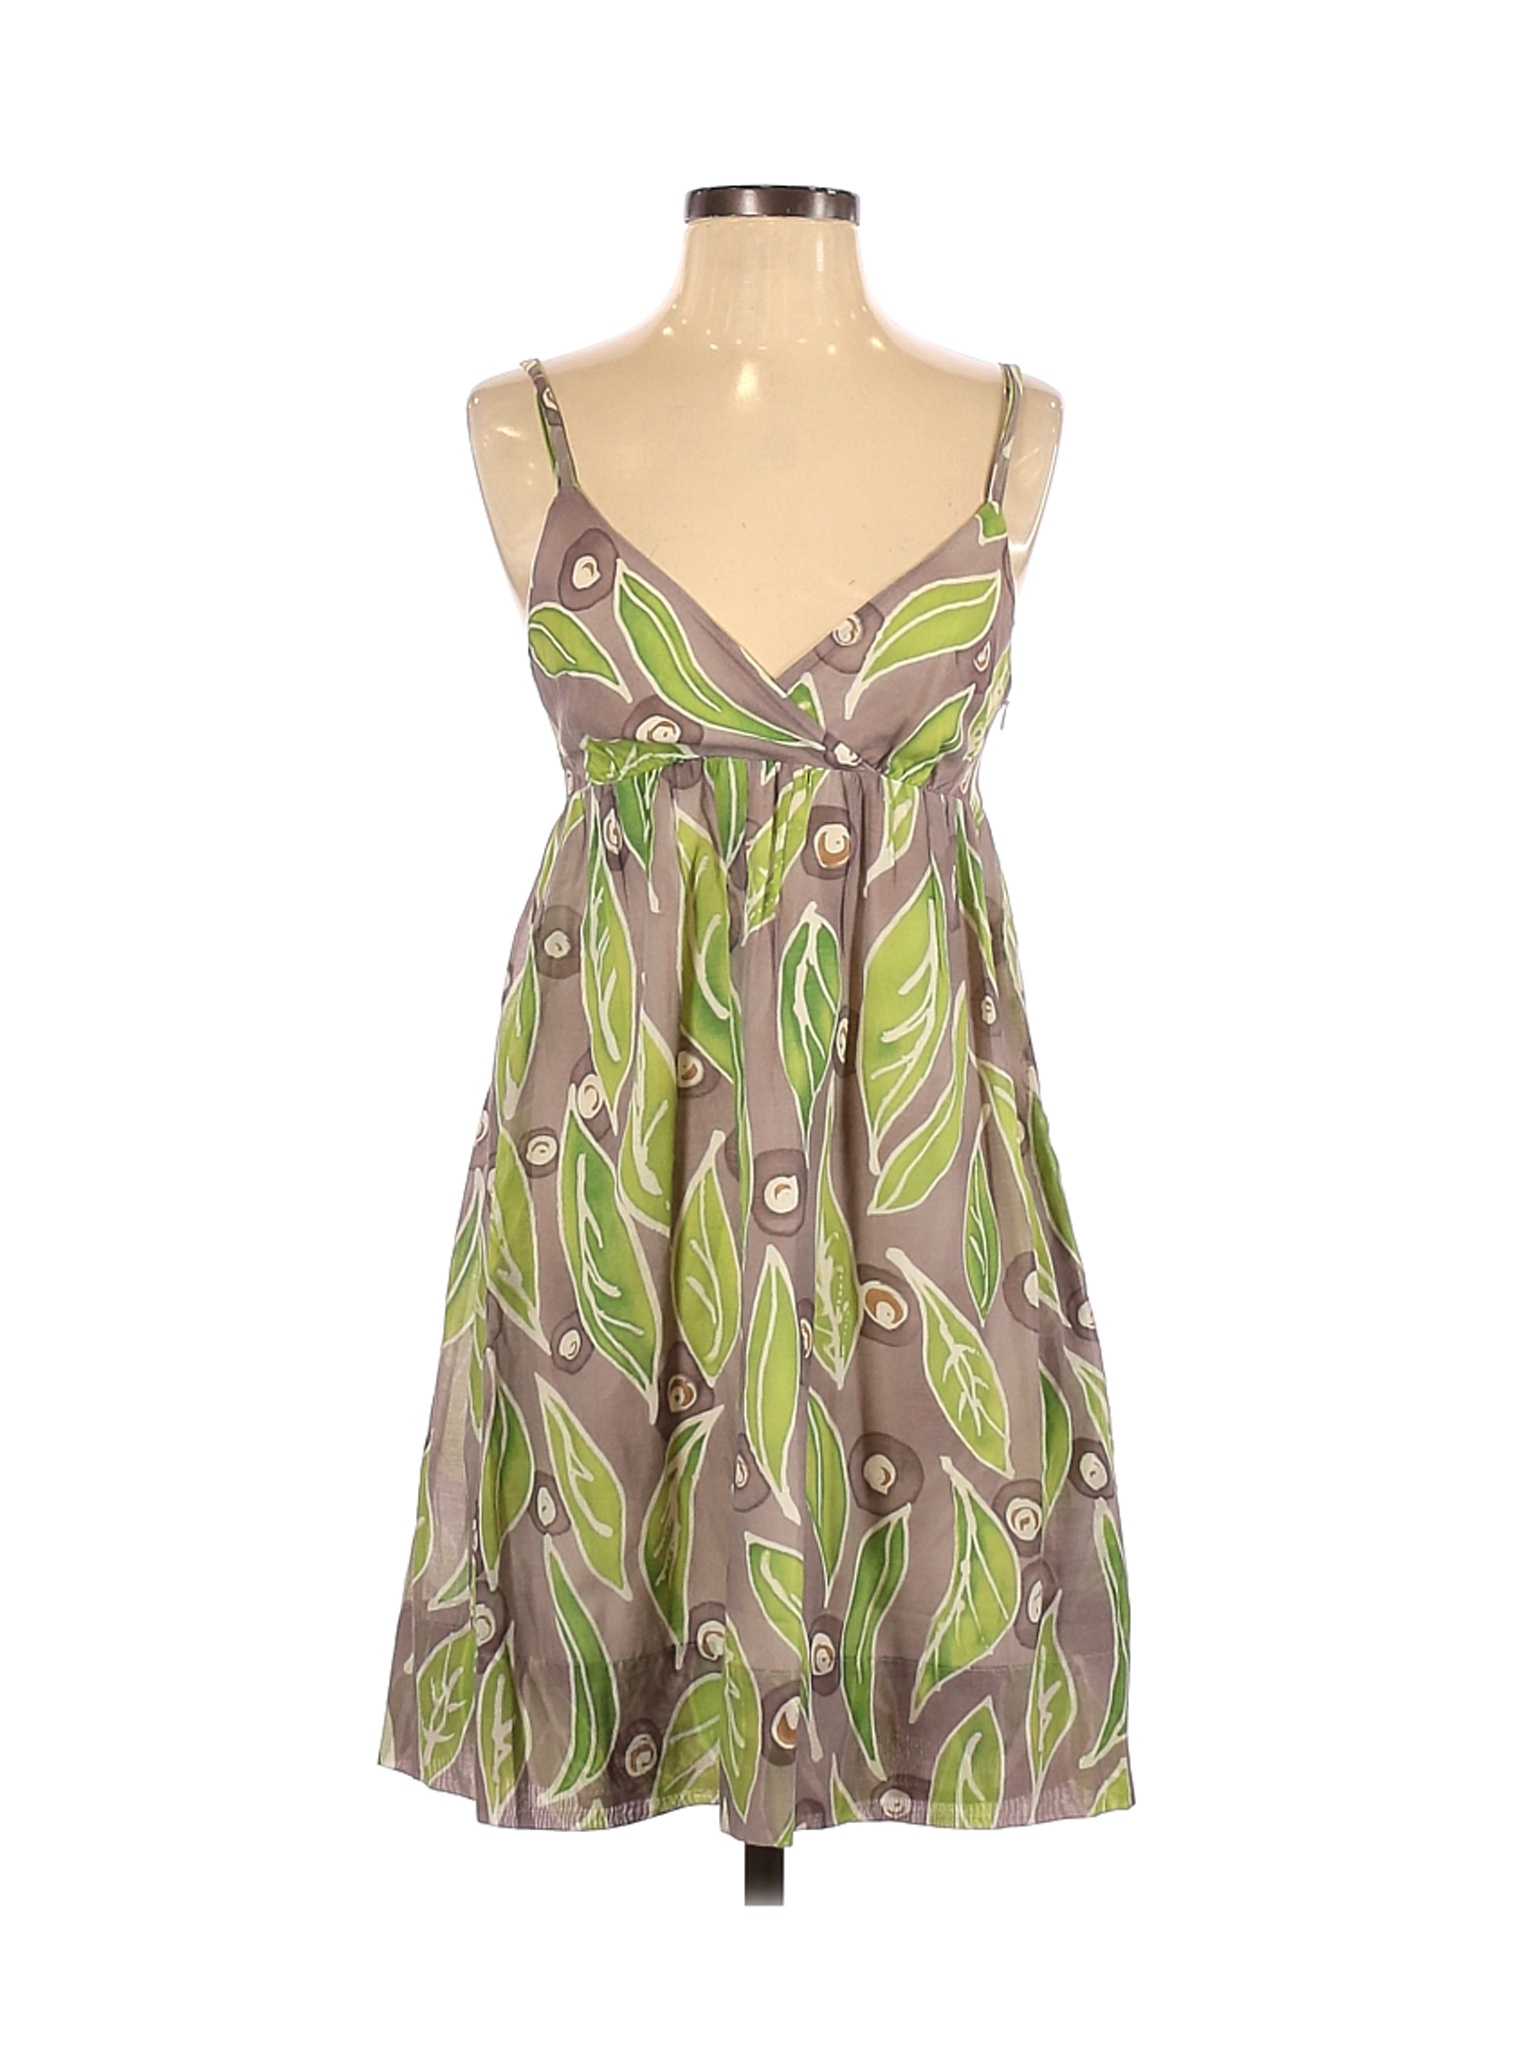 Vince. Women Green Casual Dress 4 | eBay